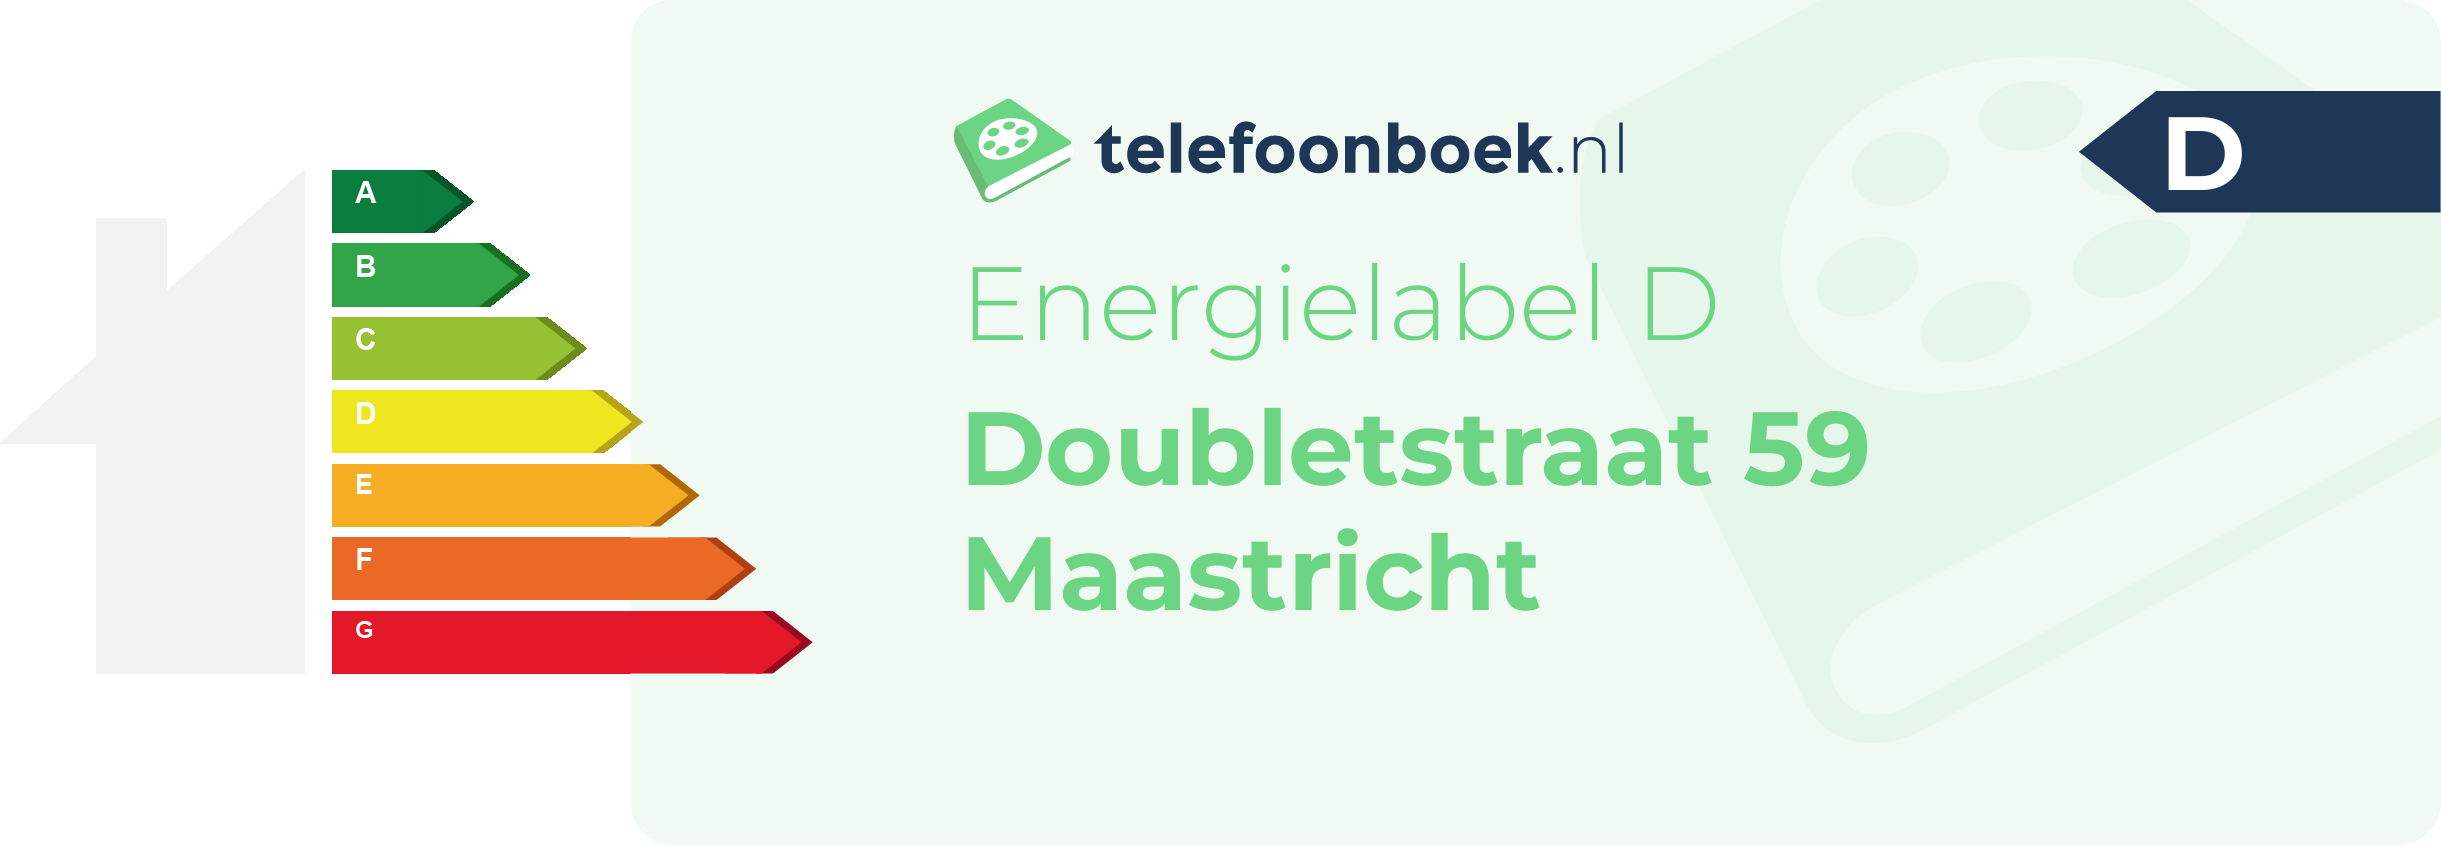 Energielabel Doubletstraat 59 Maastricht